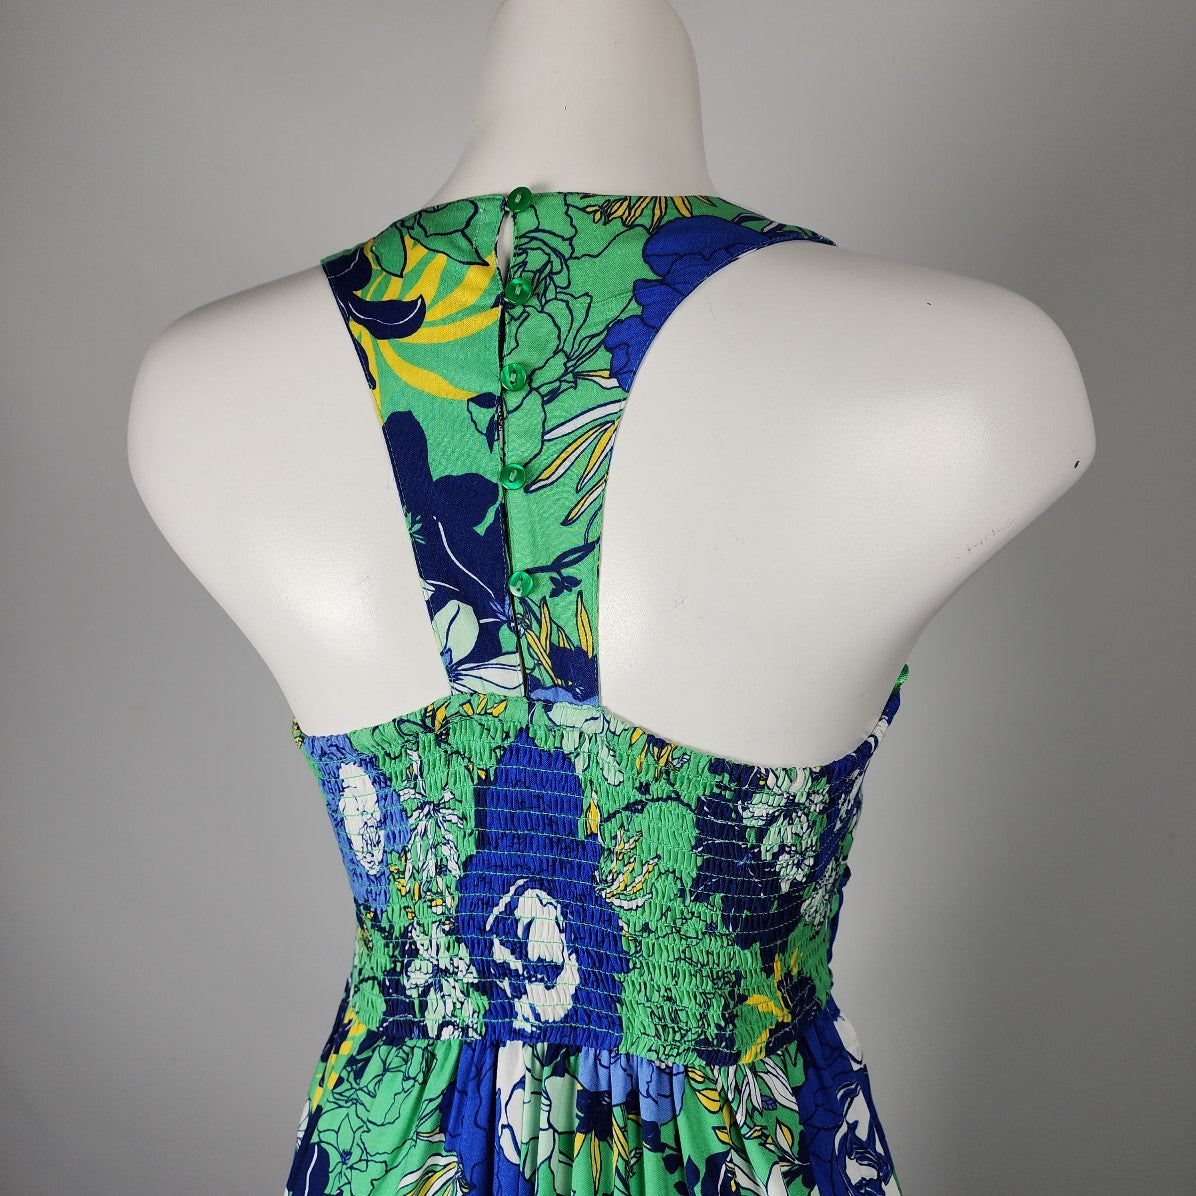 Japna Blue & Green Floral Summer Maxi Dress Size S